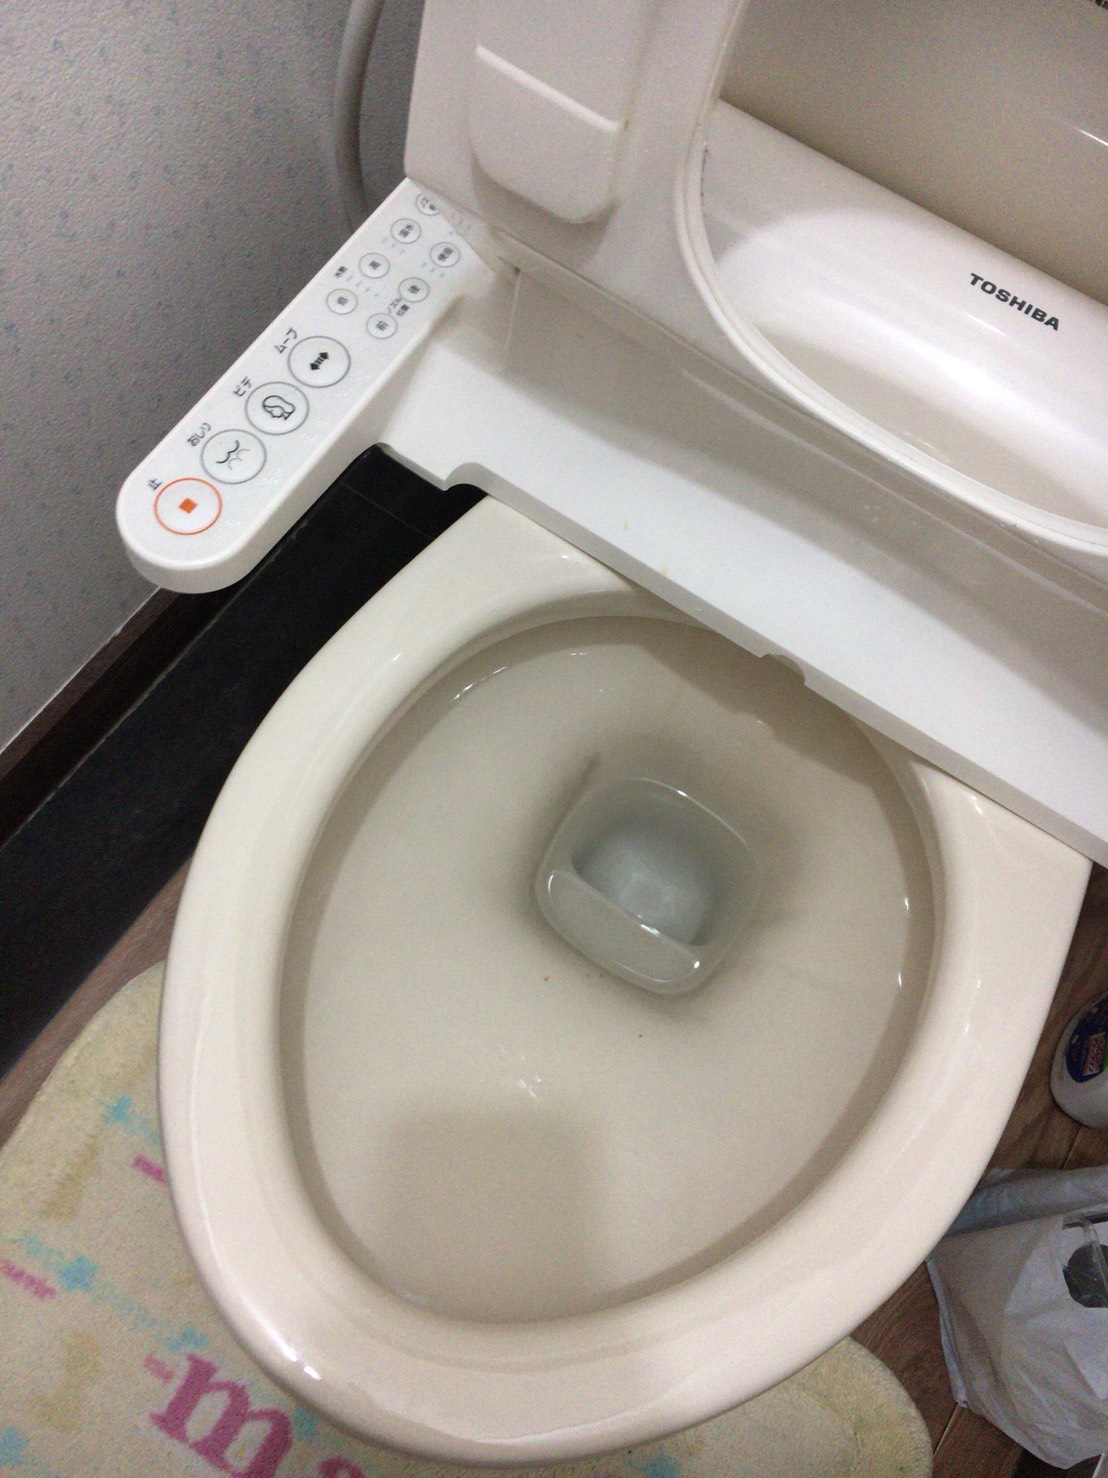 埼玉県羽生市南 トイレ水がとまらない